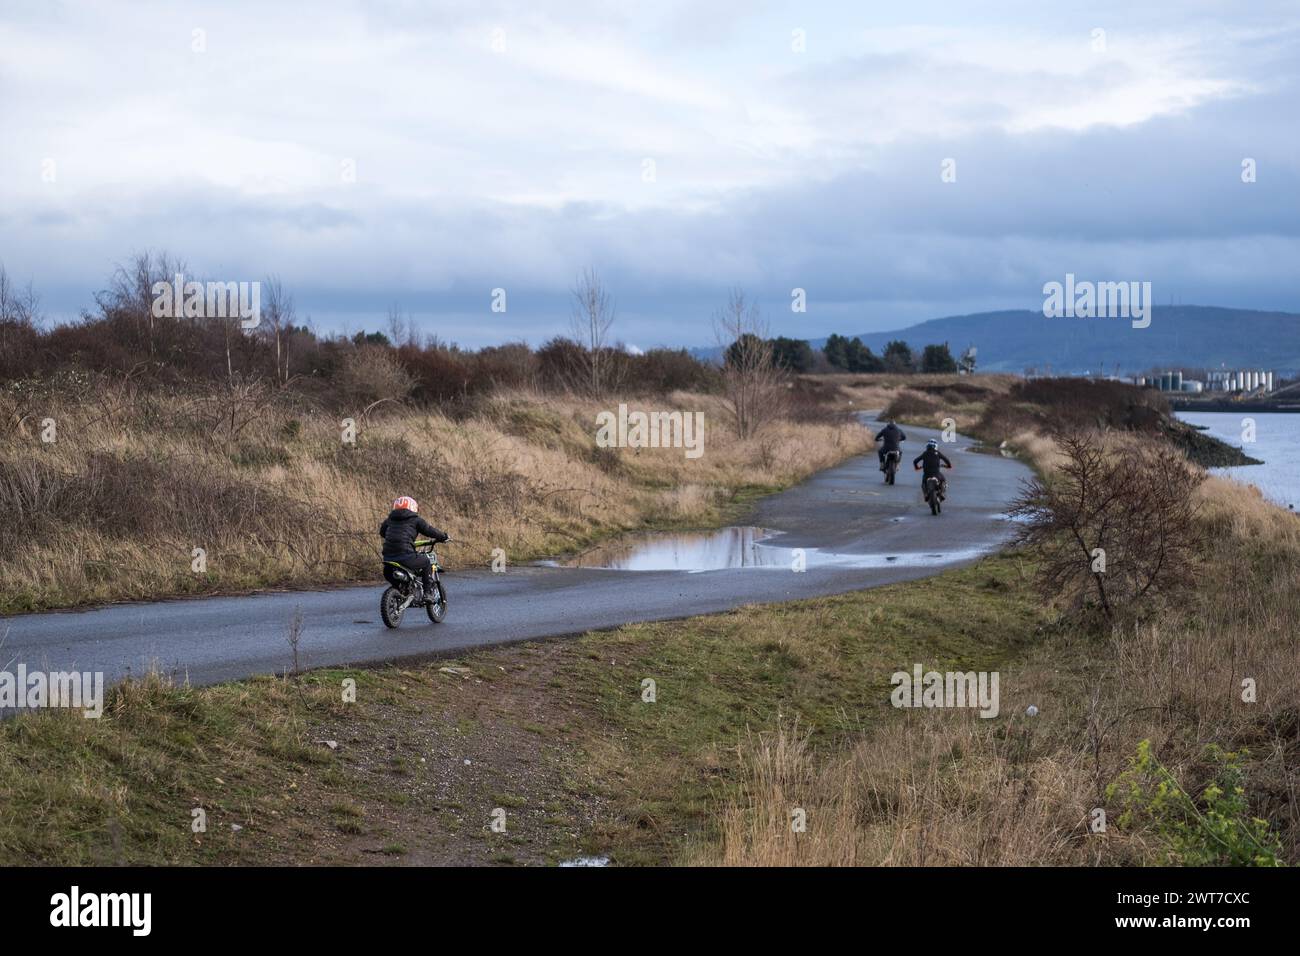 Les garçons sur des vélos tout terrain roulent sur la piste au bord de la rivière Tees, à Port Clarence. Teesside, Angleterre du Nord-est, Royaume-Uni. Banque D'Images